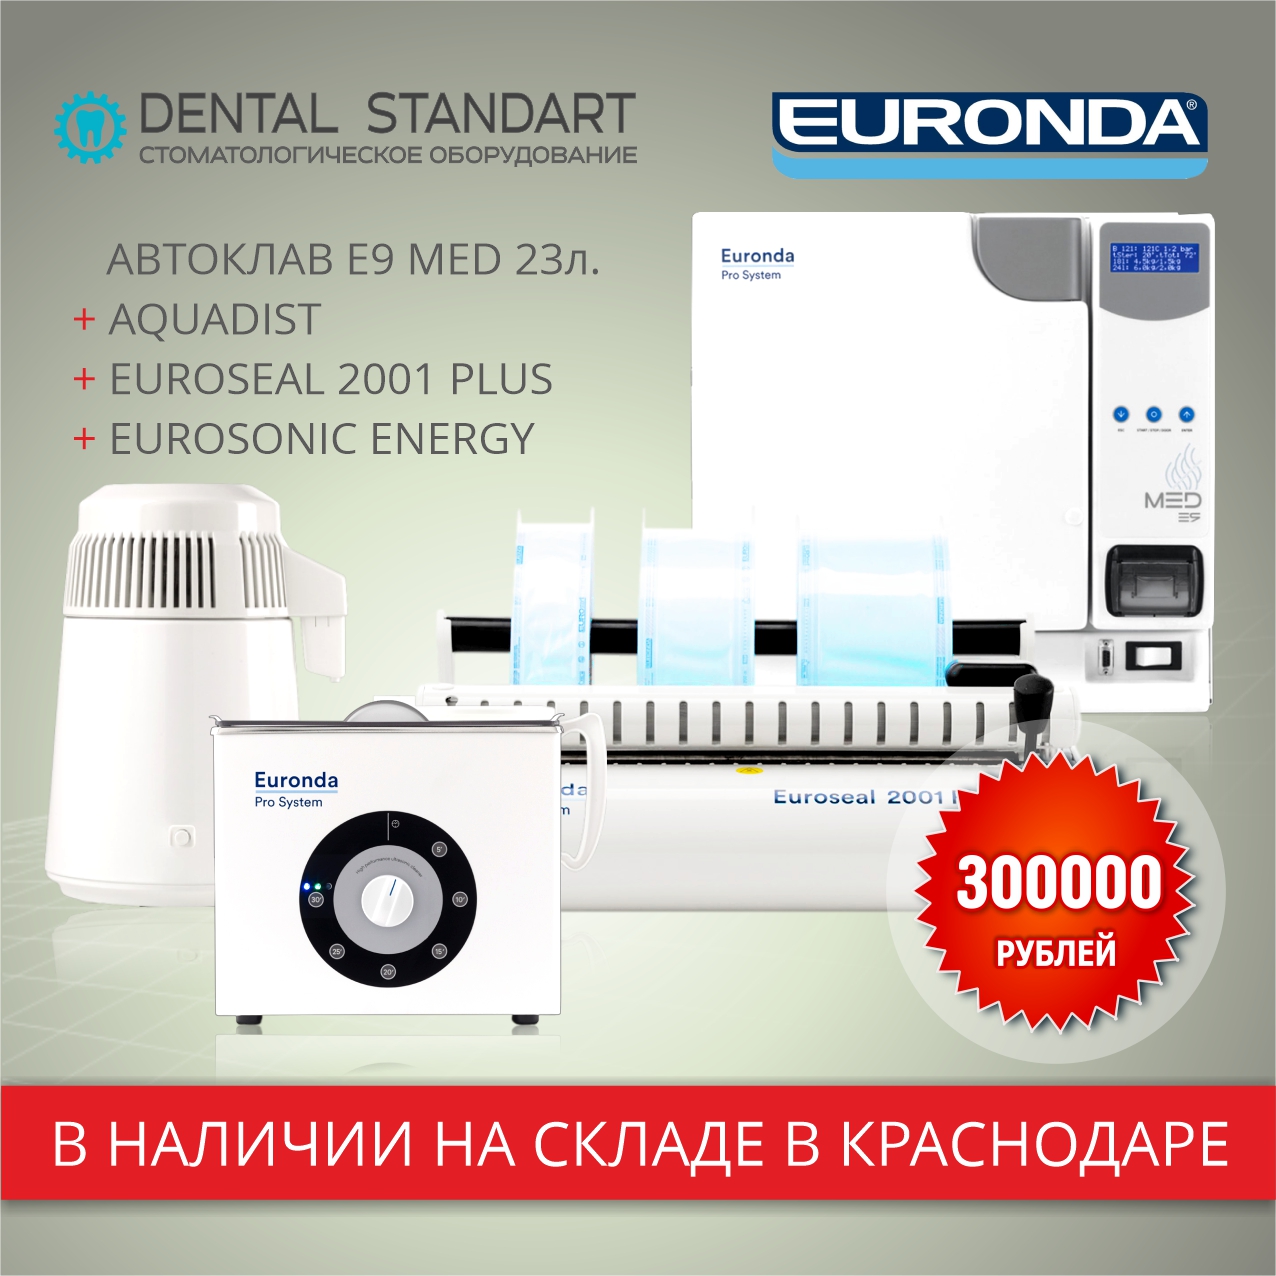 Медицинское и стоматологическое оборудование по выгодной цене на складе в Краснодаре.